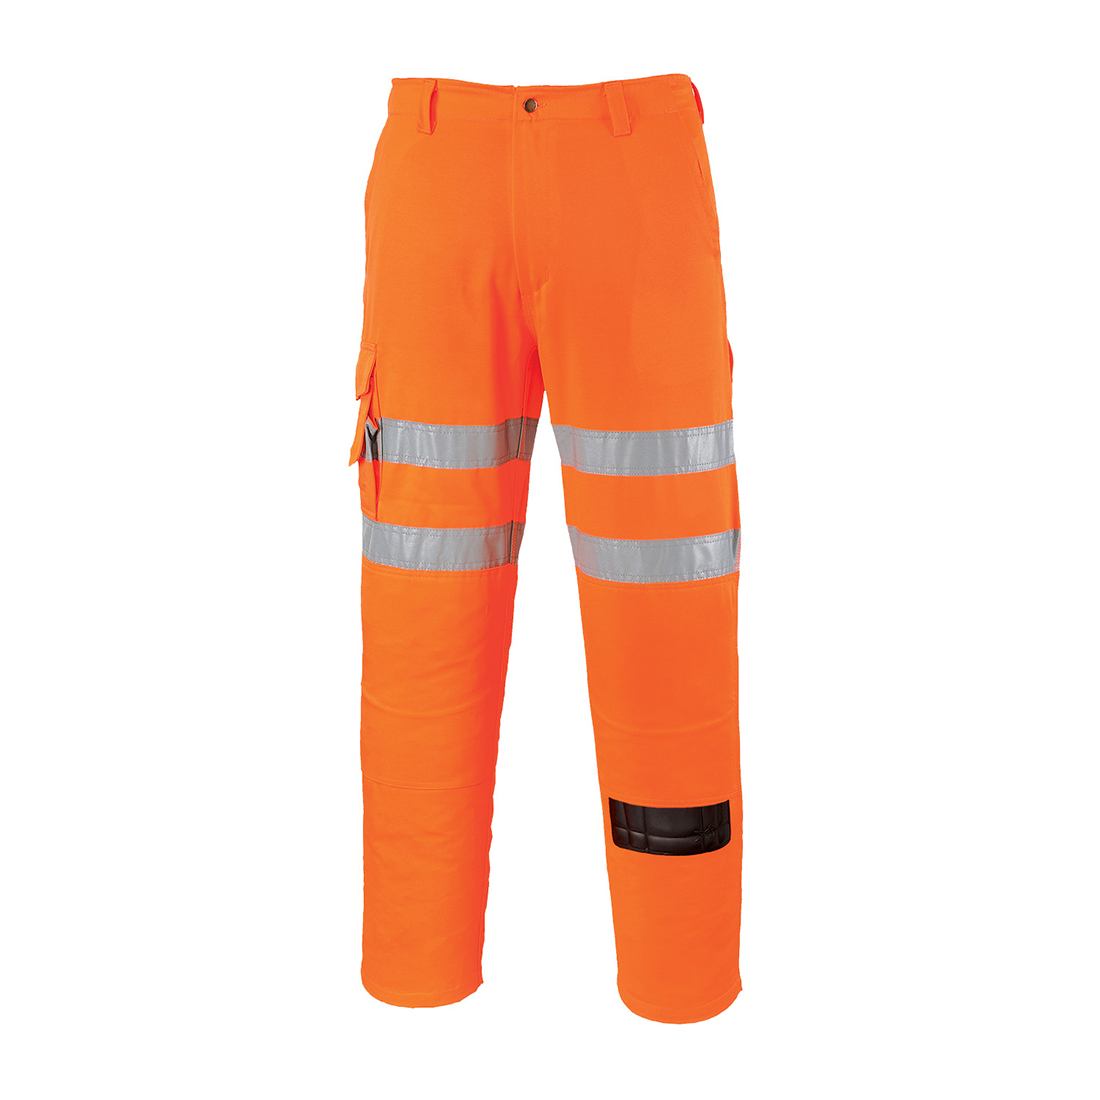 Rail Combat Trouser - Orange